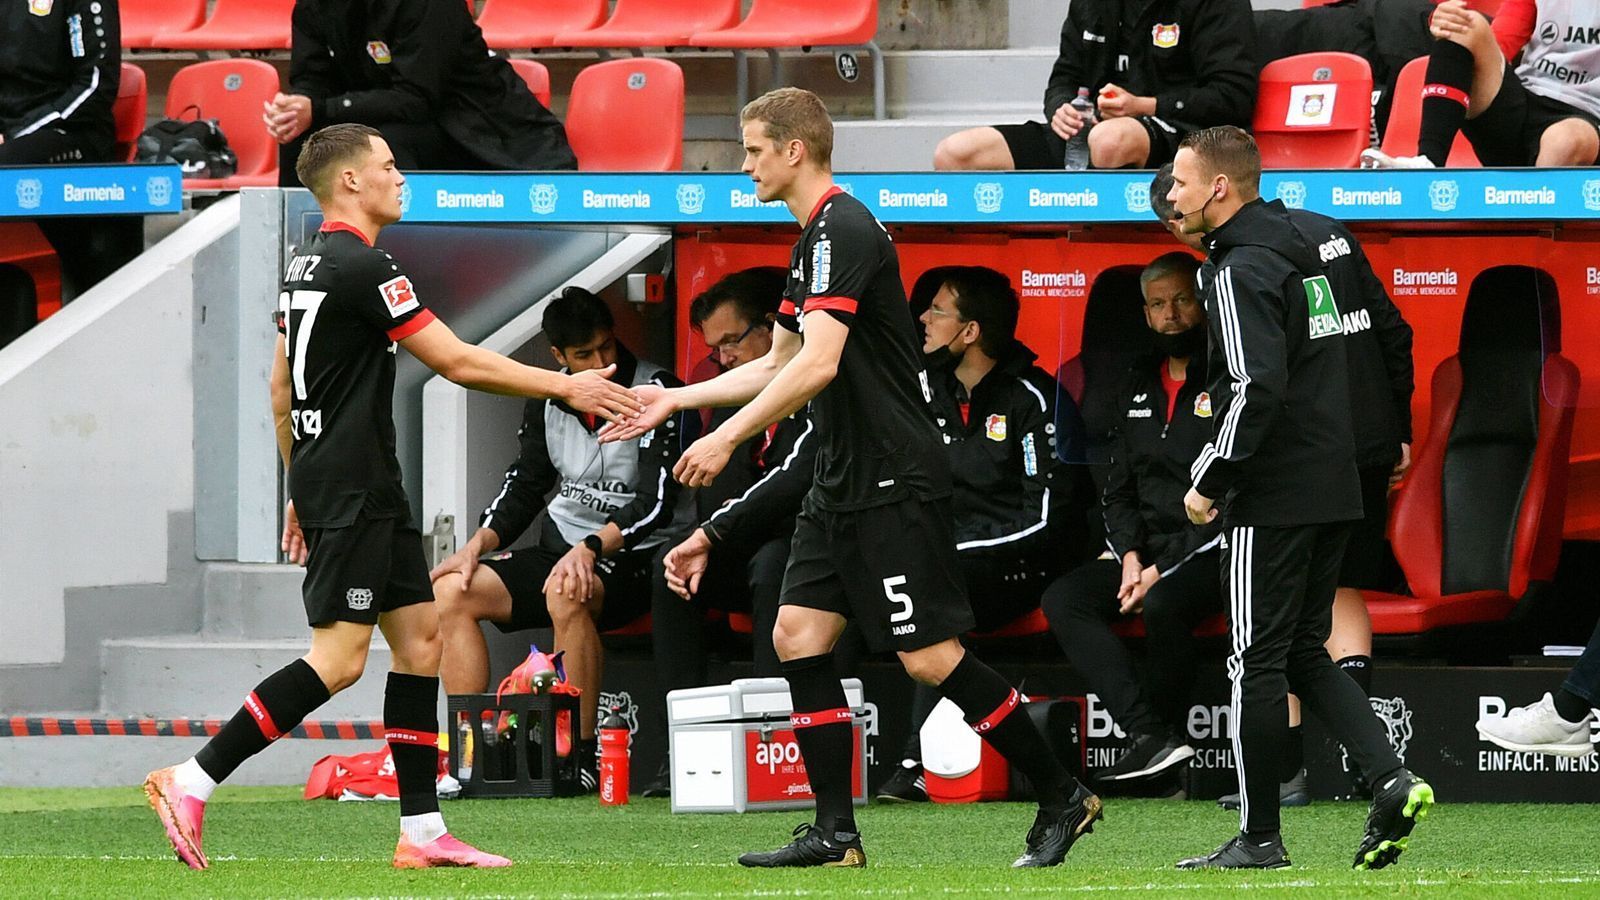 
                <strong>Leverkusen erreicht Minimalziel Europa League </strong><br>
                Nach einer durchwachsenen zweiten Saisonhälfte bleibt Bayer Leverkusen immerhin ein Platz in der Europa League. Weil die Konkurrente,n aus Gladbach (1:2 gegen Stuttgart) sowie Freiburg (2:2 gegen Bayern) nicht gewinnen, reicht der Mannschaft von Trainer Hannes Wolf gegen Union Berlin ein 1:1, um Tabellenrang sechs zu sichern. 
              